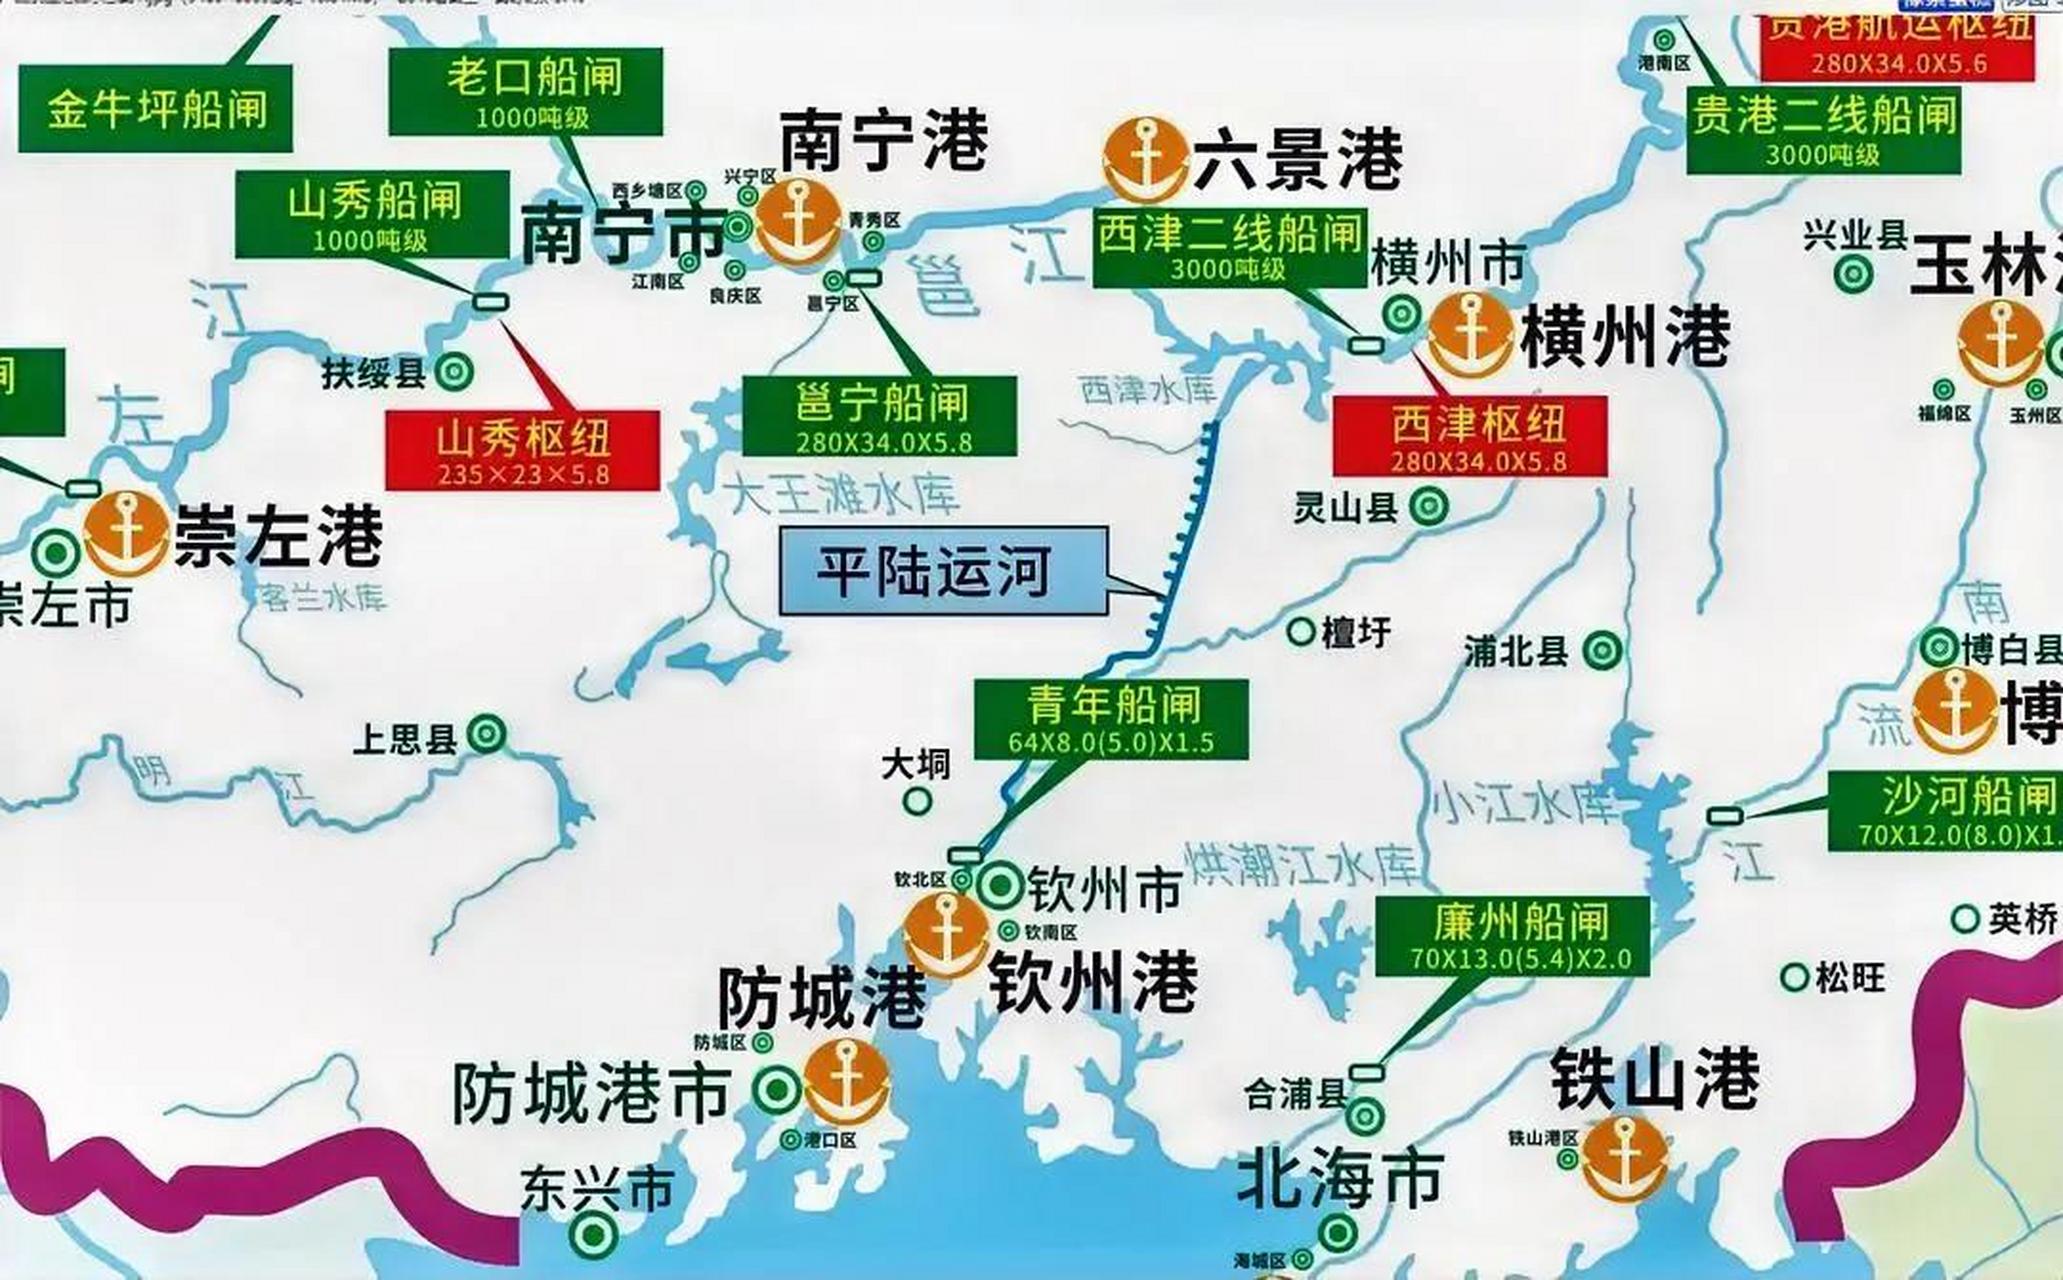 看完这张地图,不知道大家能否分辨出,广西平陆运河能让哪些港口的吞吐